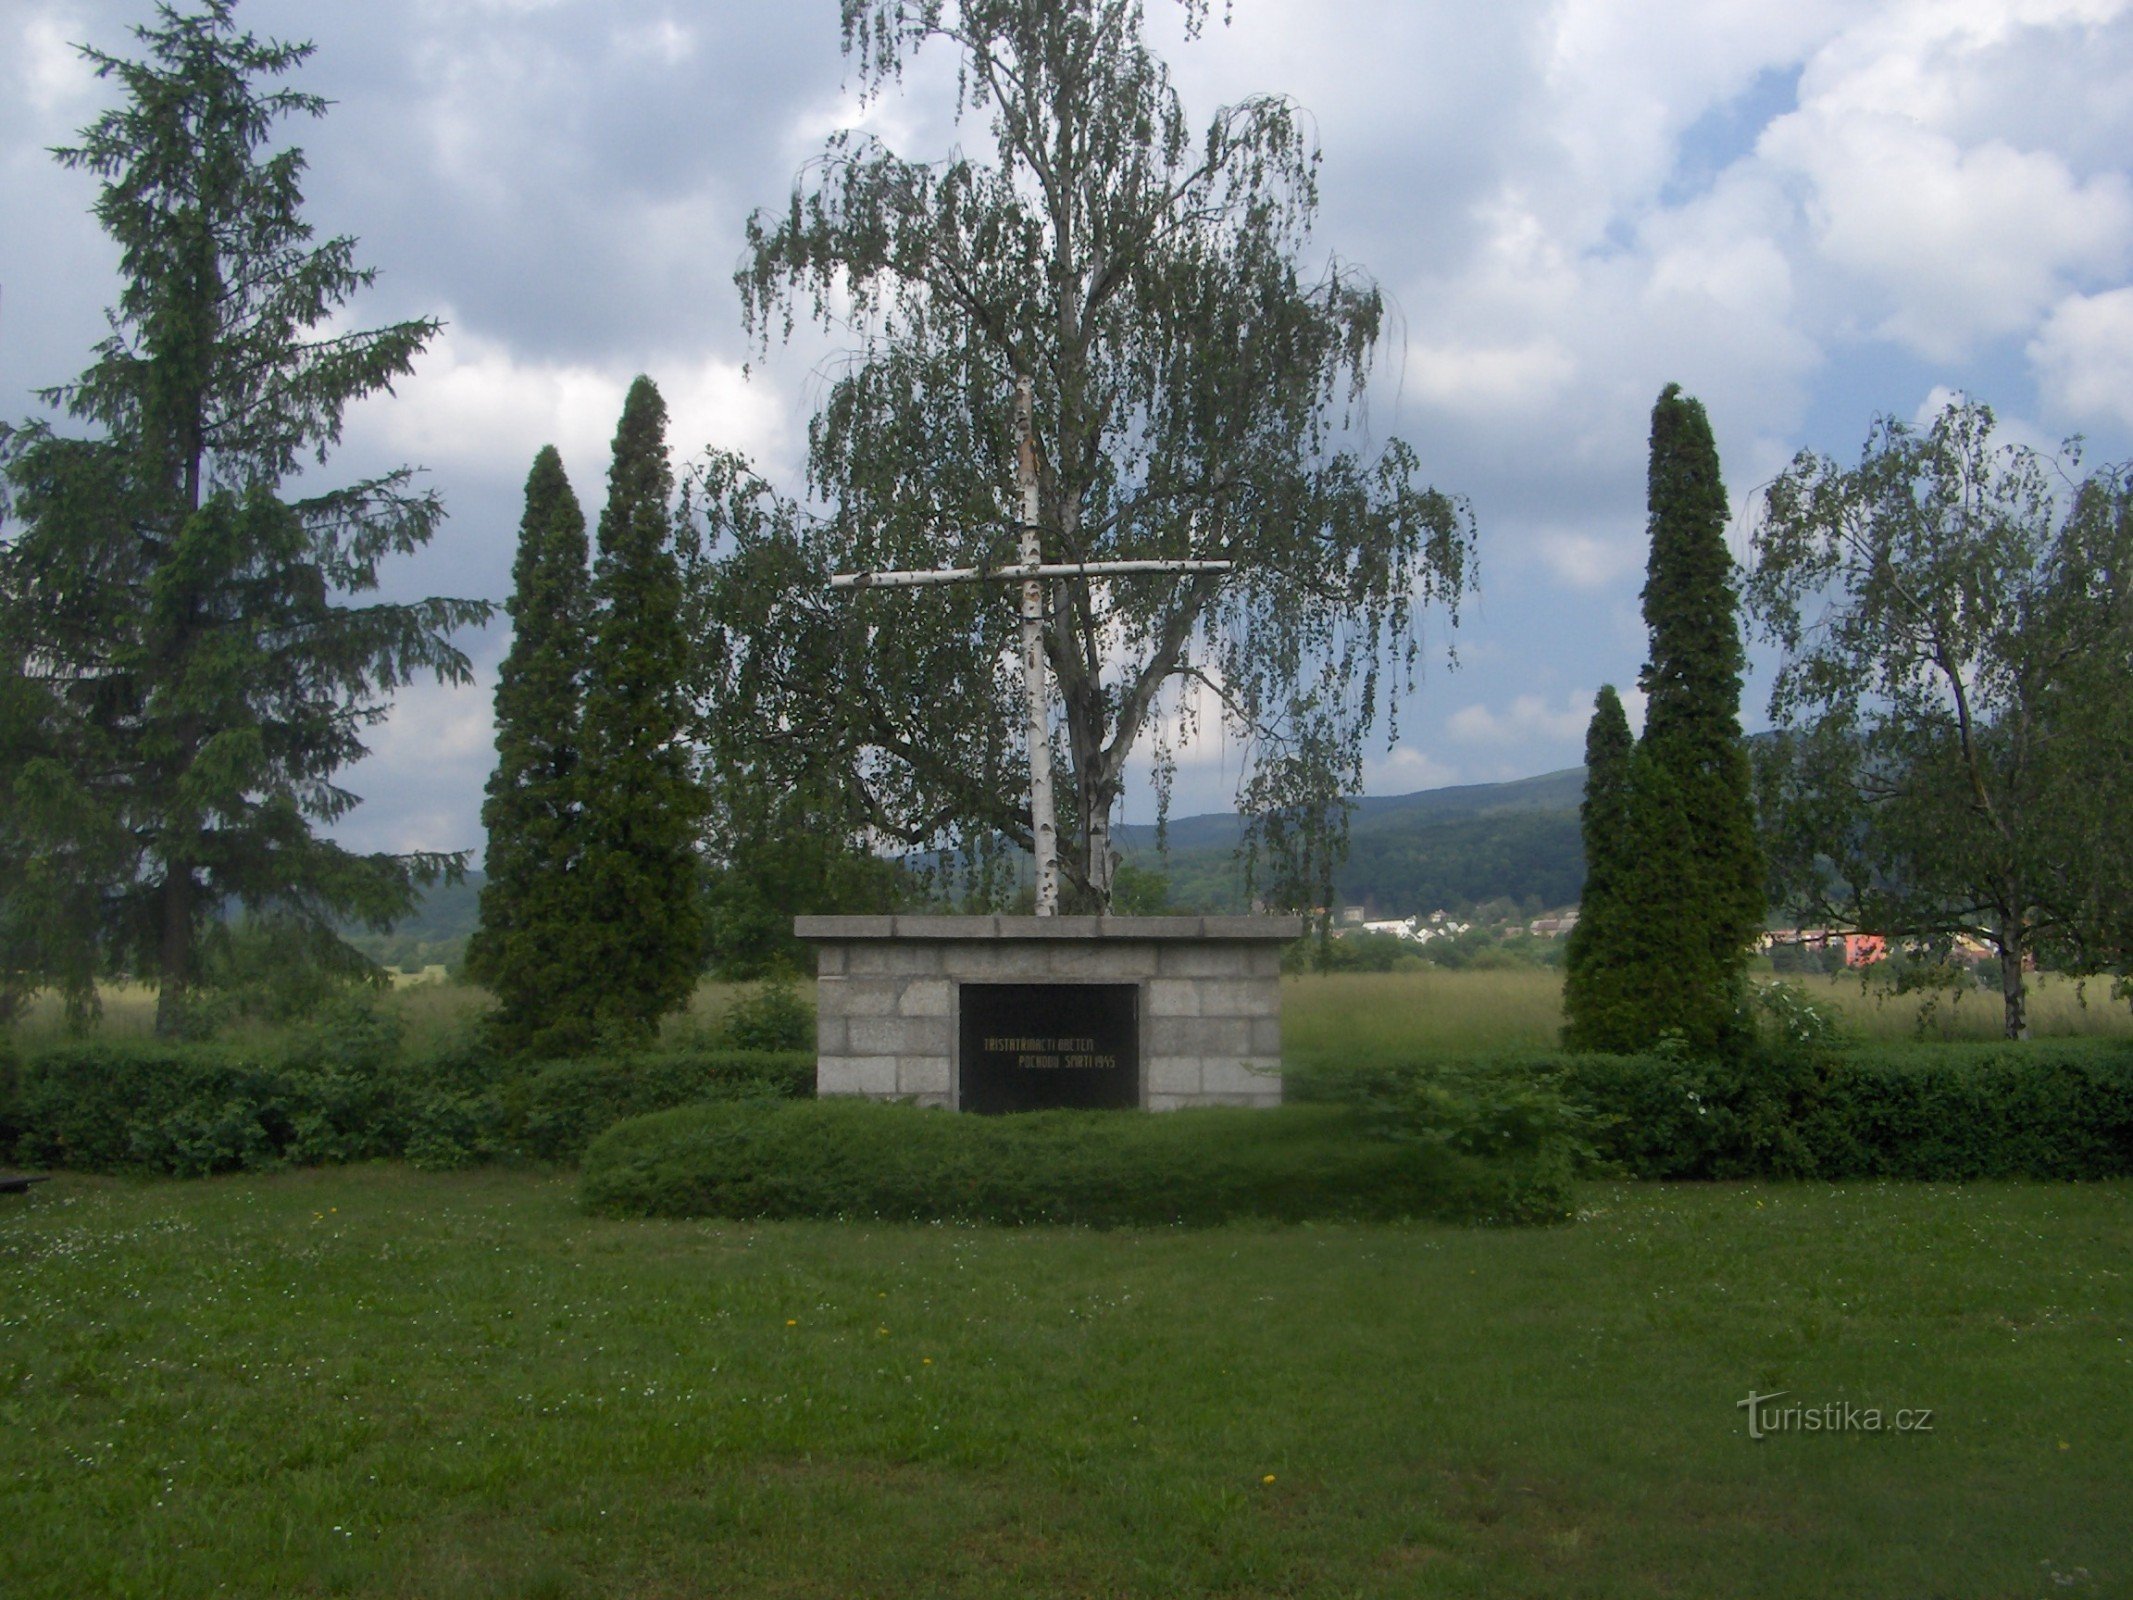 Monumento alle vittime del trasporto della morte.